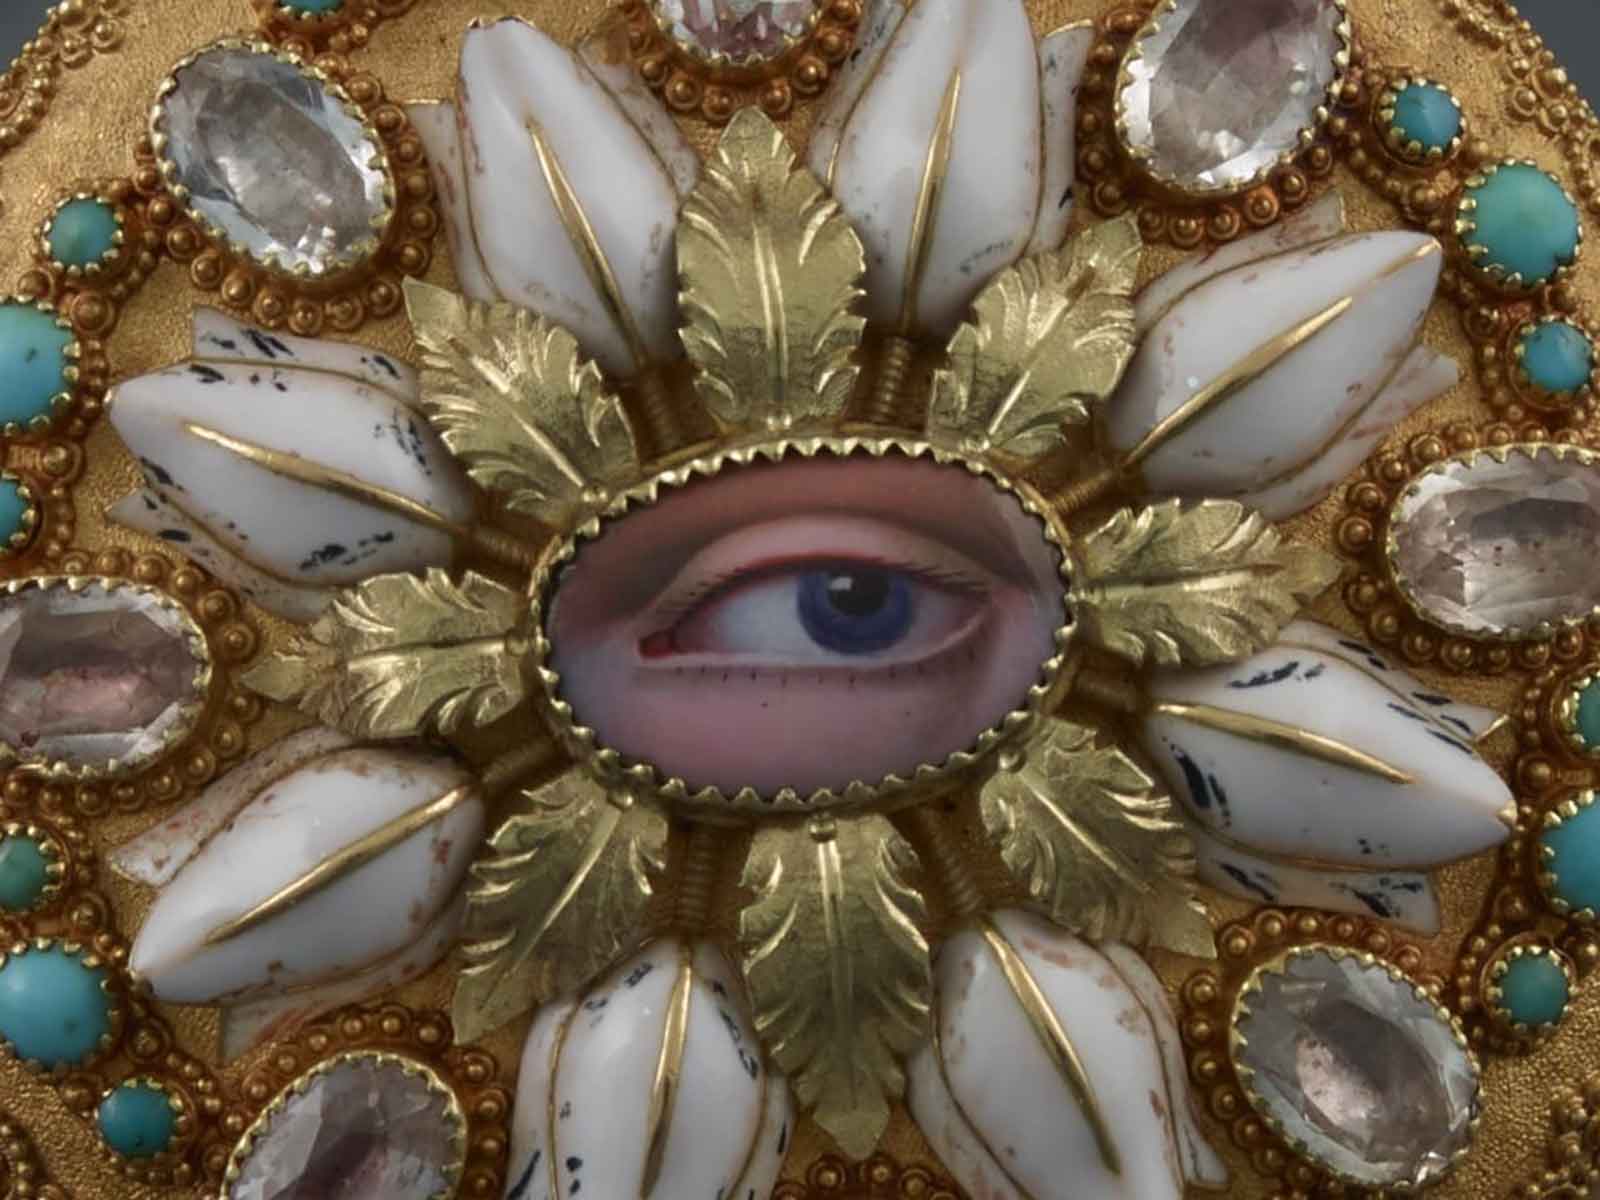 Dettaglio di un Orologio da tasca, Moricand et Degrange con un occhio dipinto circondato da pietre, perle, foglie dorate e turchesi incastonati in oro.